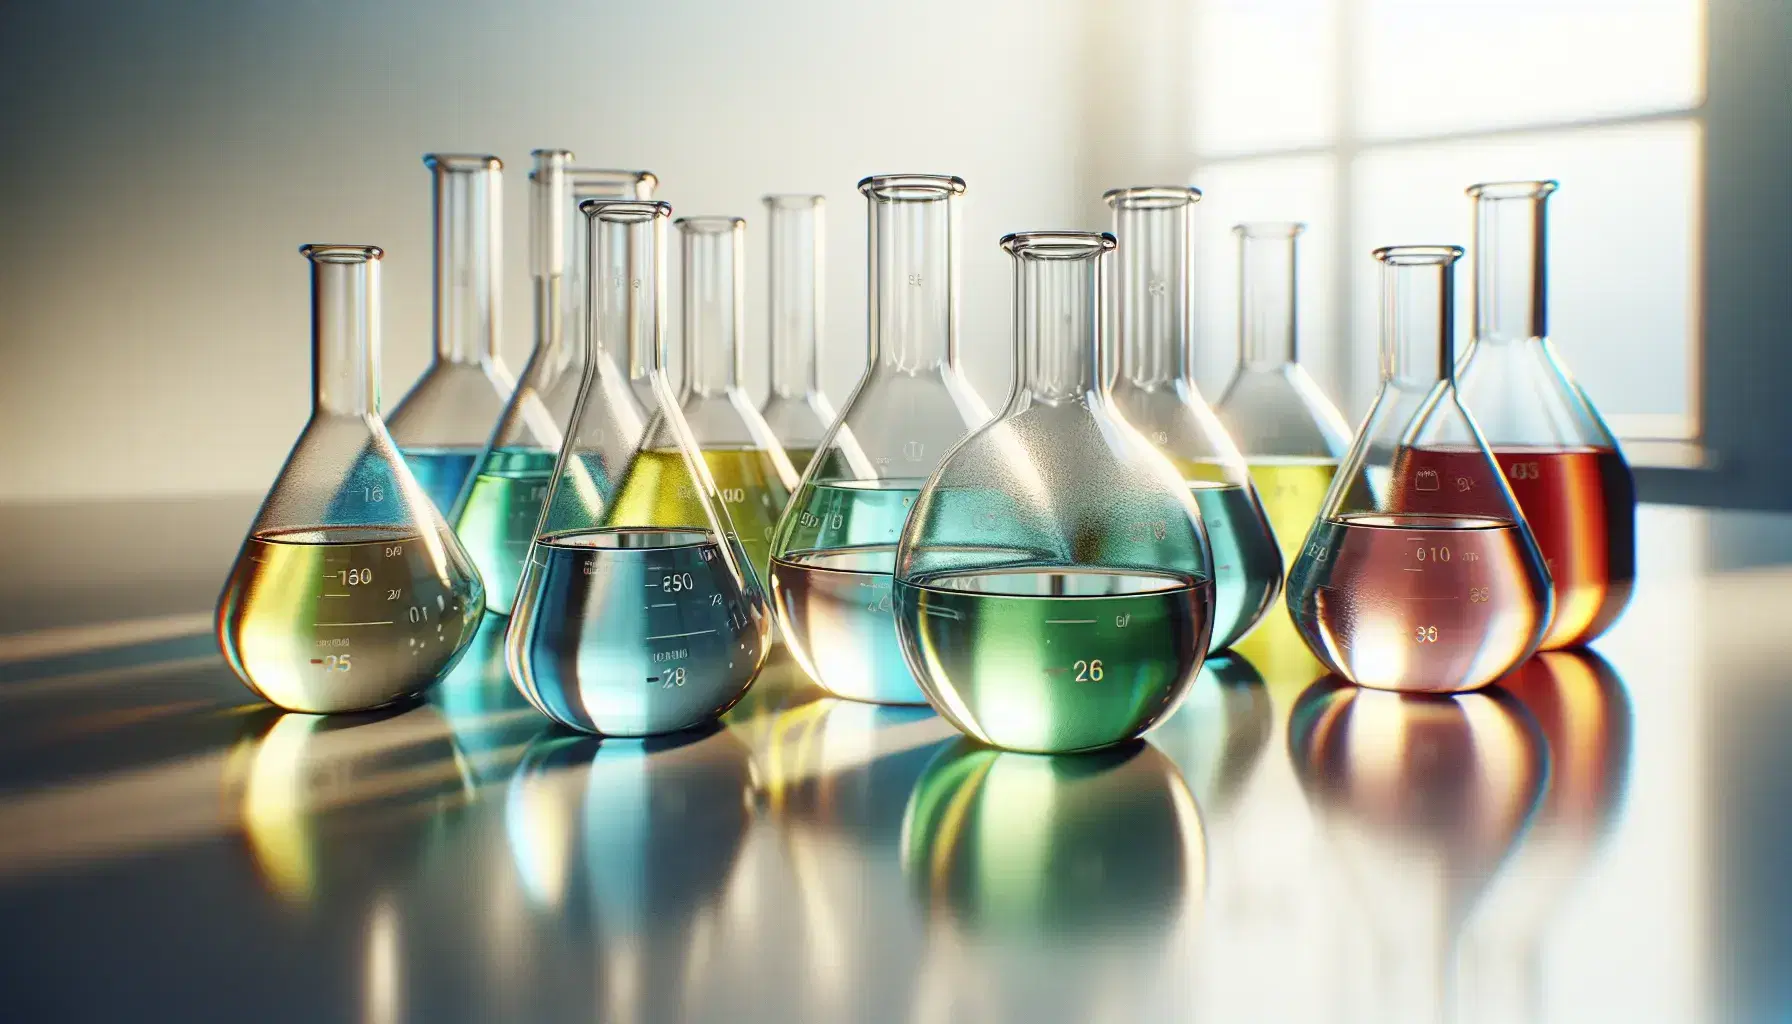 Frascos de Erlenmeyer de vidrio en fila con líquidos de colores azul claro, verde, amarillo y rojo sobre superficie blanca en laboratorio, sin etiquetas visibles.